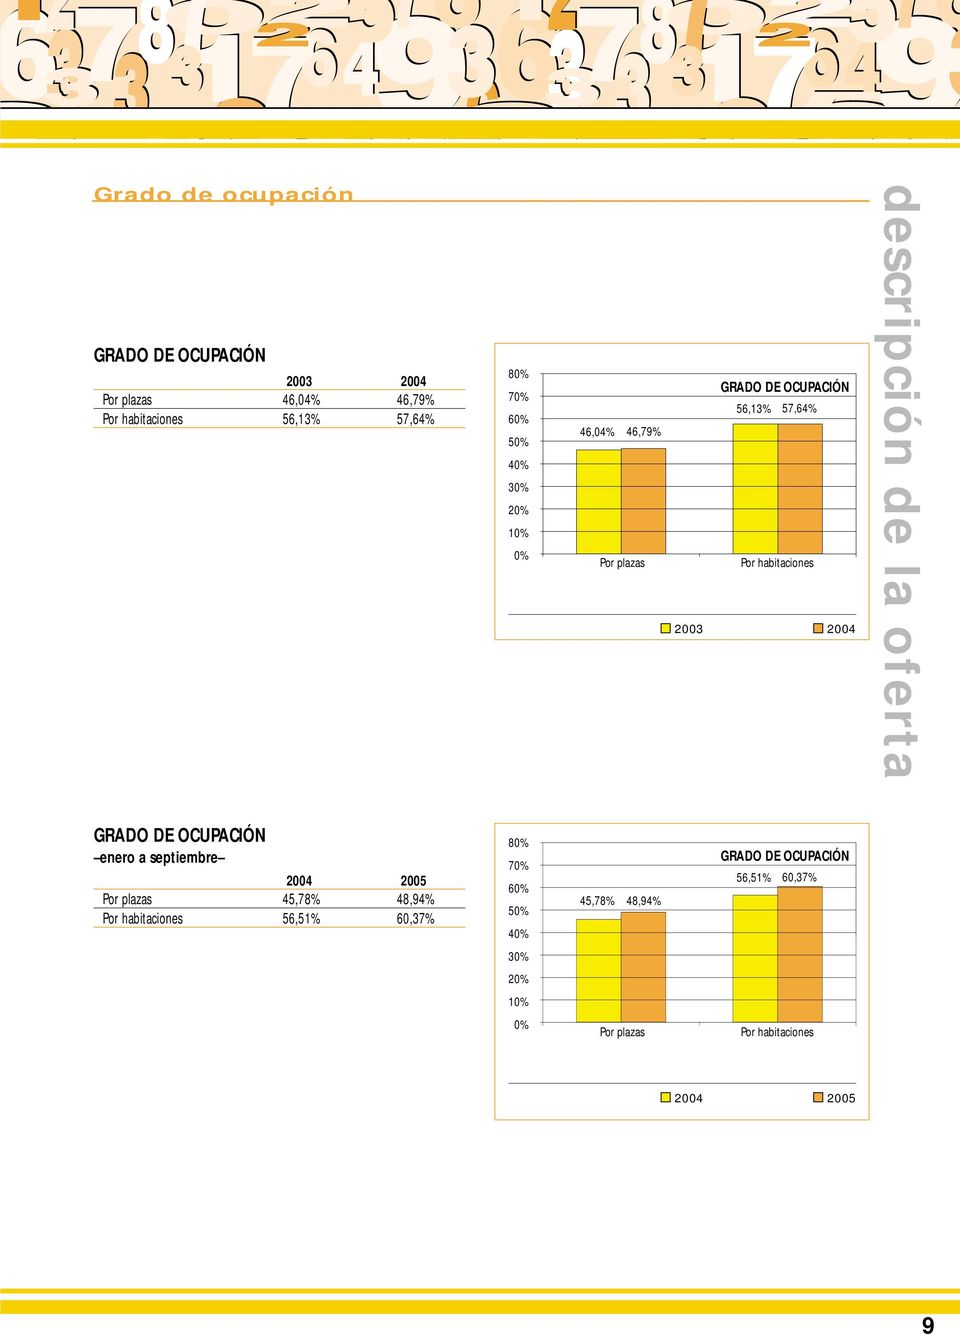 de la oferta GRADO DE OCUPACIÓN 8% enero a septiembre 24 25 Por plazas 45,78% 48,94% Por habitaciones 56,51%